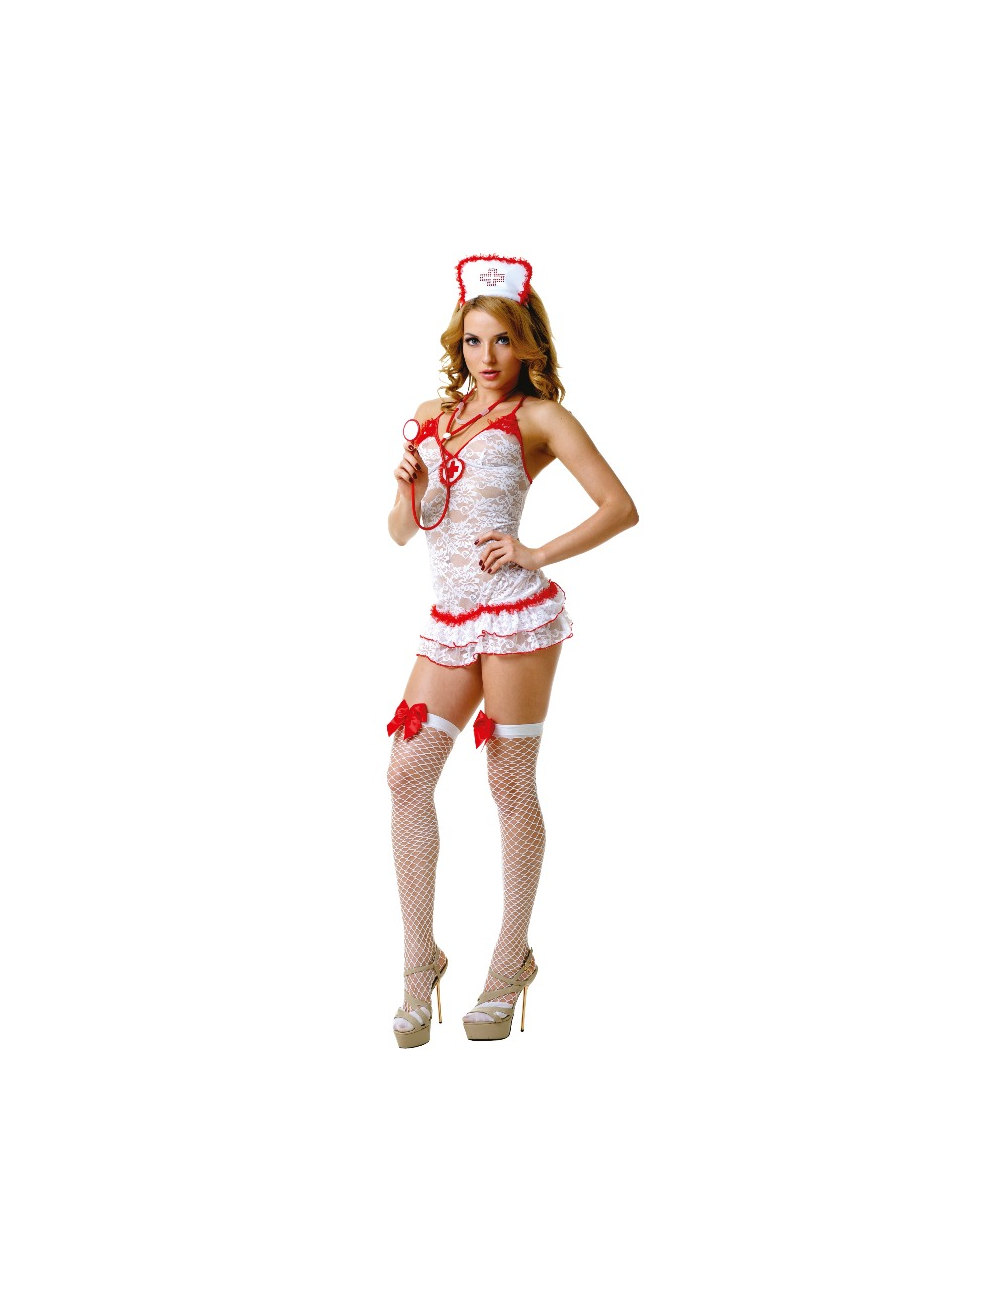 Le frivole - 02893 costume infirmière 4 pièces s / m